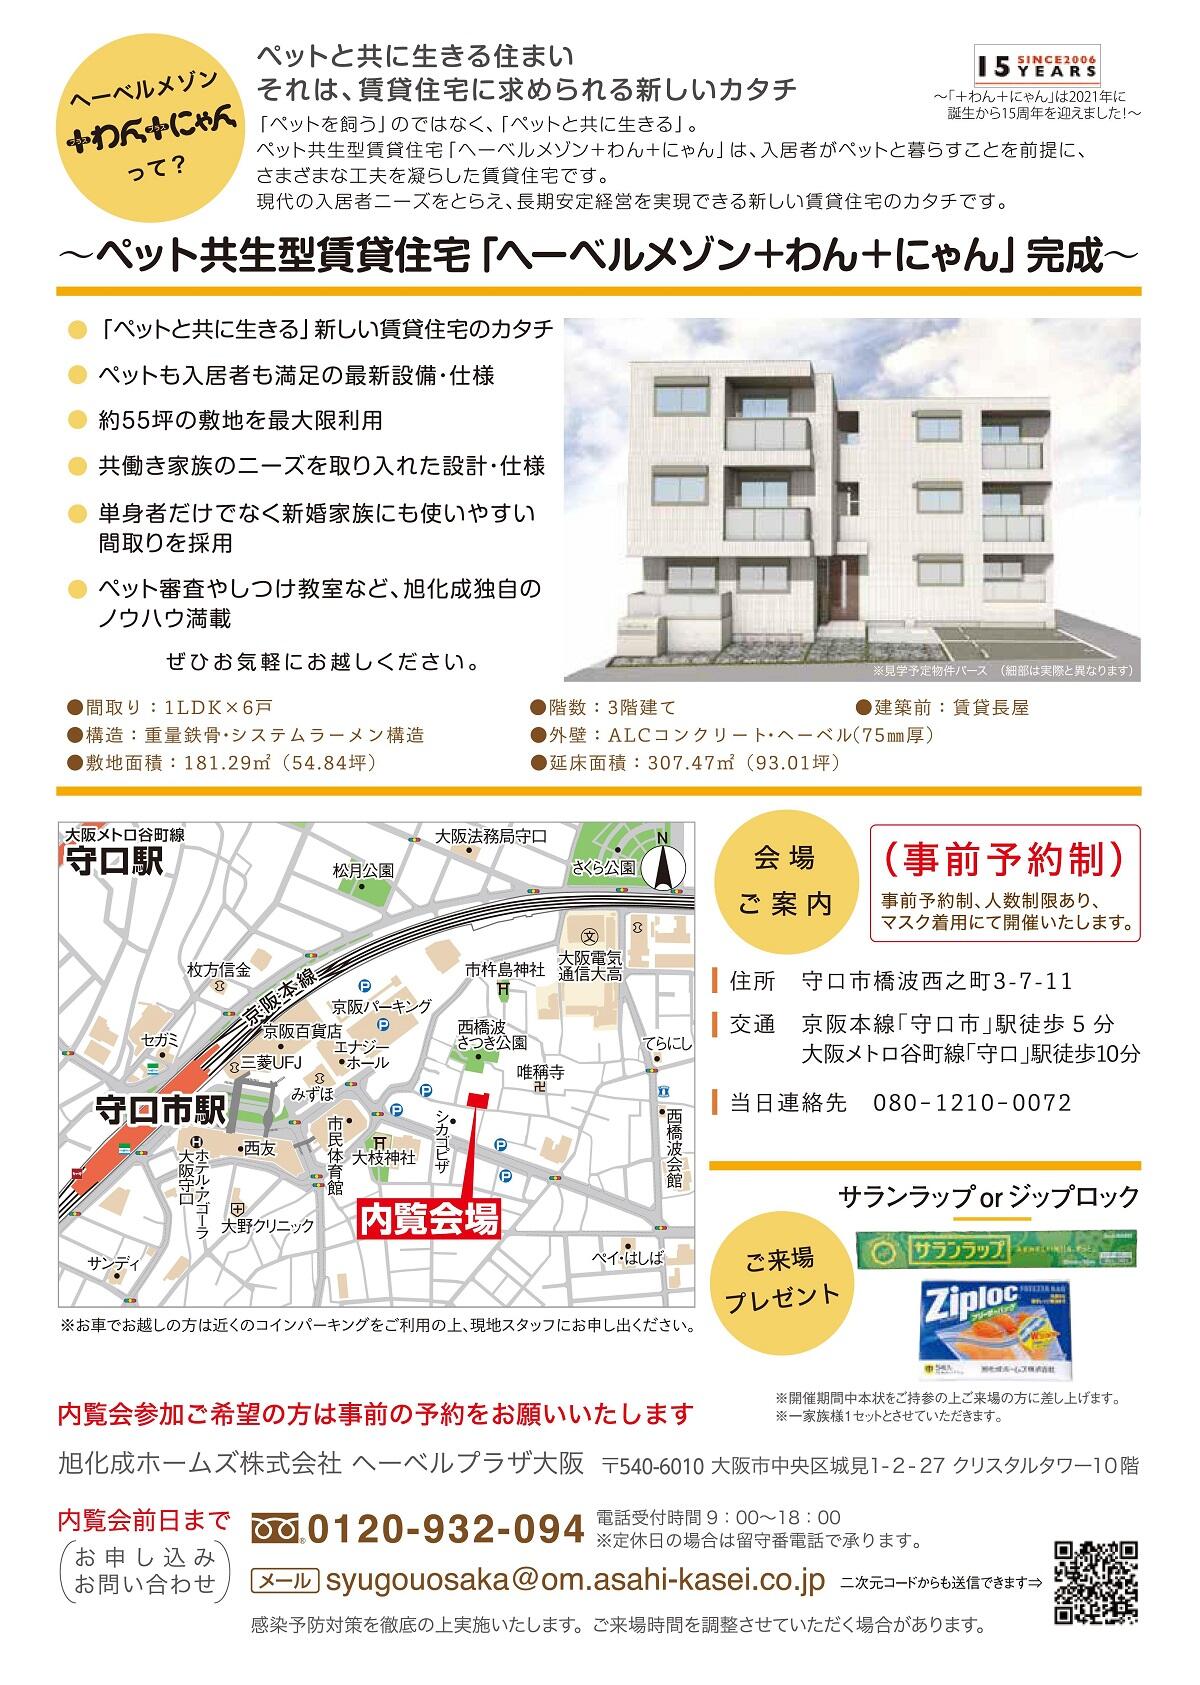 https://www.asahi-kasei.co.jp/maison/hebelplaza/blog/18/osaka/item/2021/20211025-3.jpg